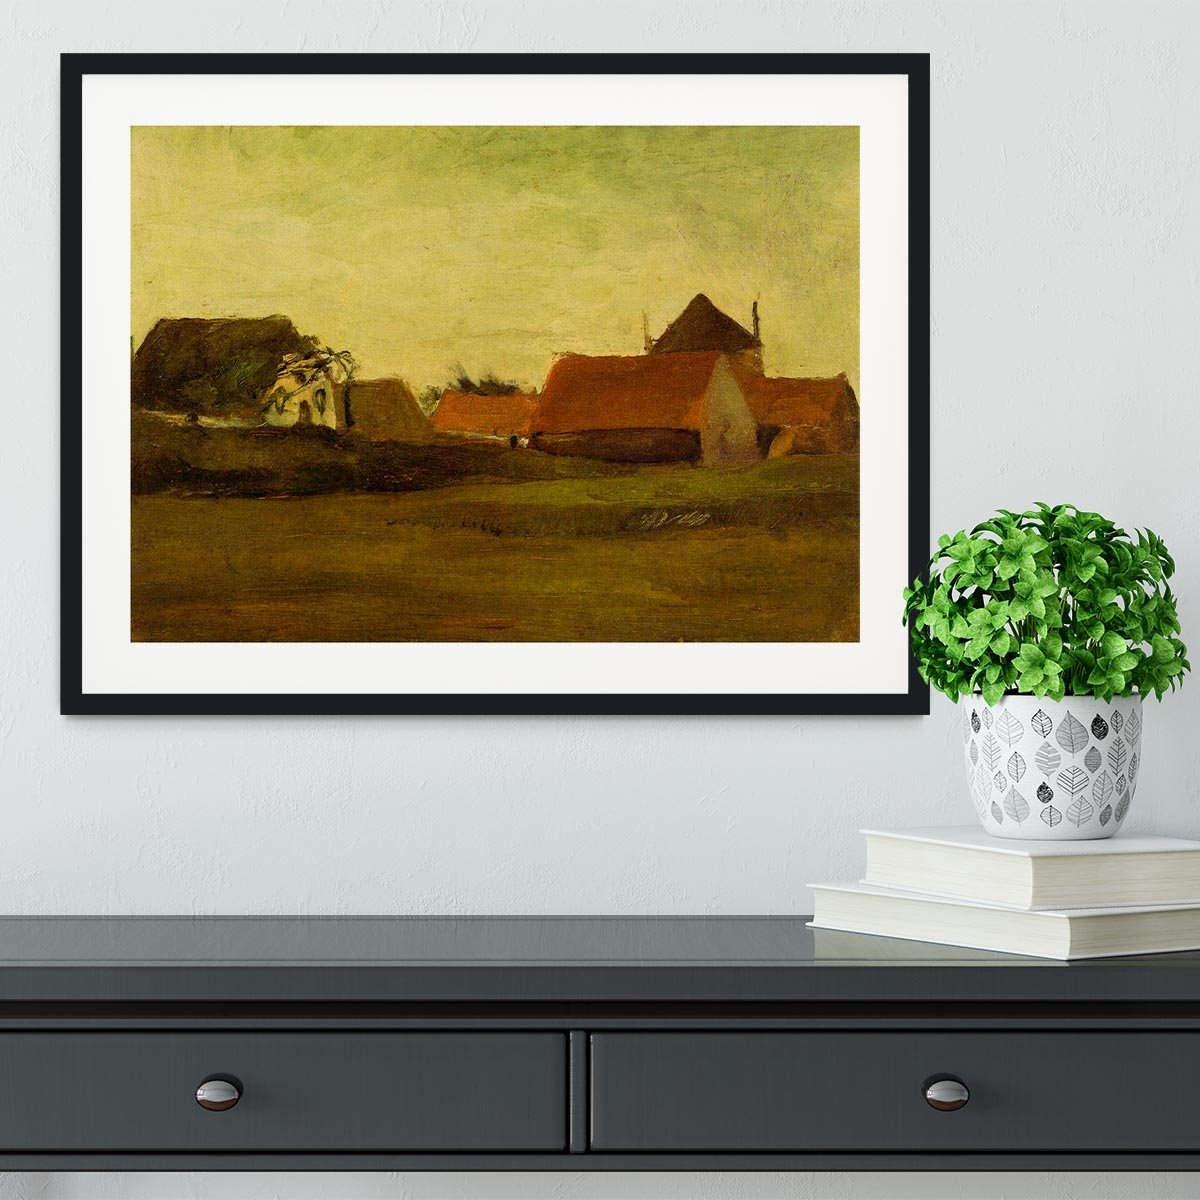 Farmhouses in Loosduinen near The Hague at Twilight by Van Gogh Framed Print - Canvas Art Rocks - 1